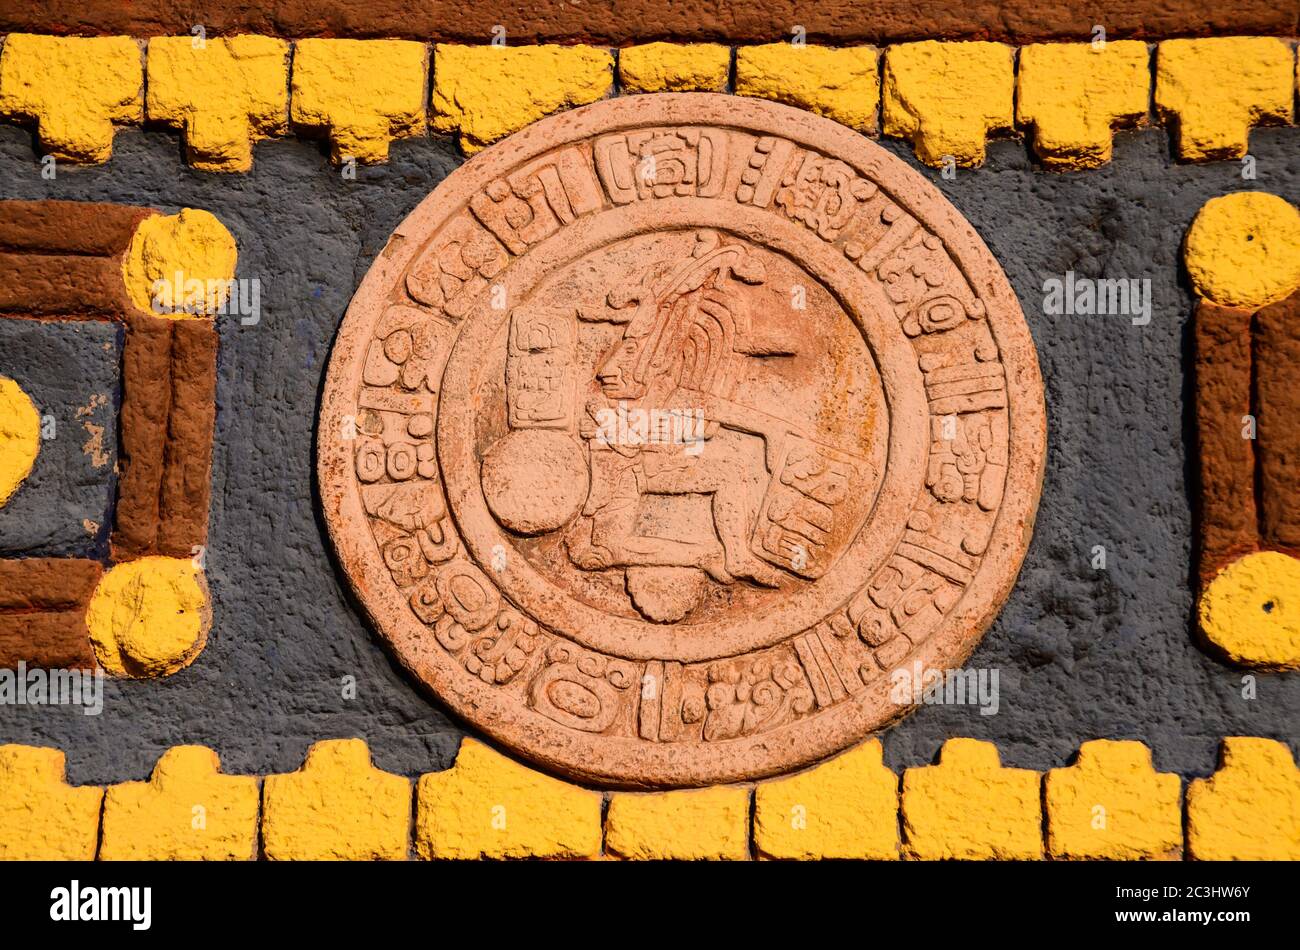 Calendrier de l'art maya typique Bas-relief Ruins Banque D'Images